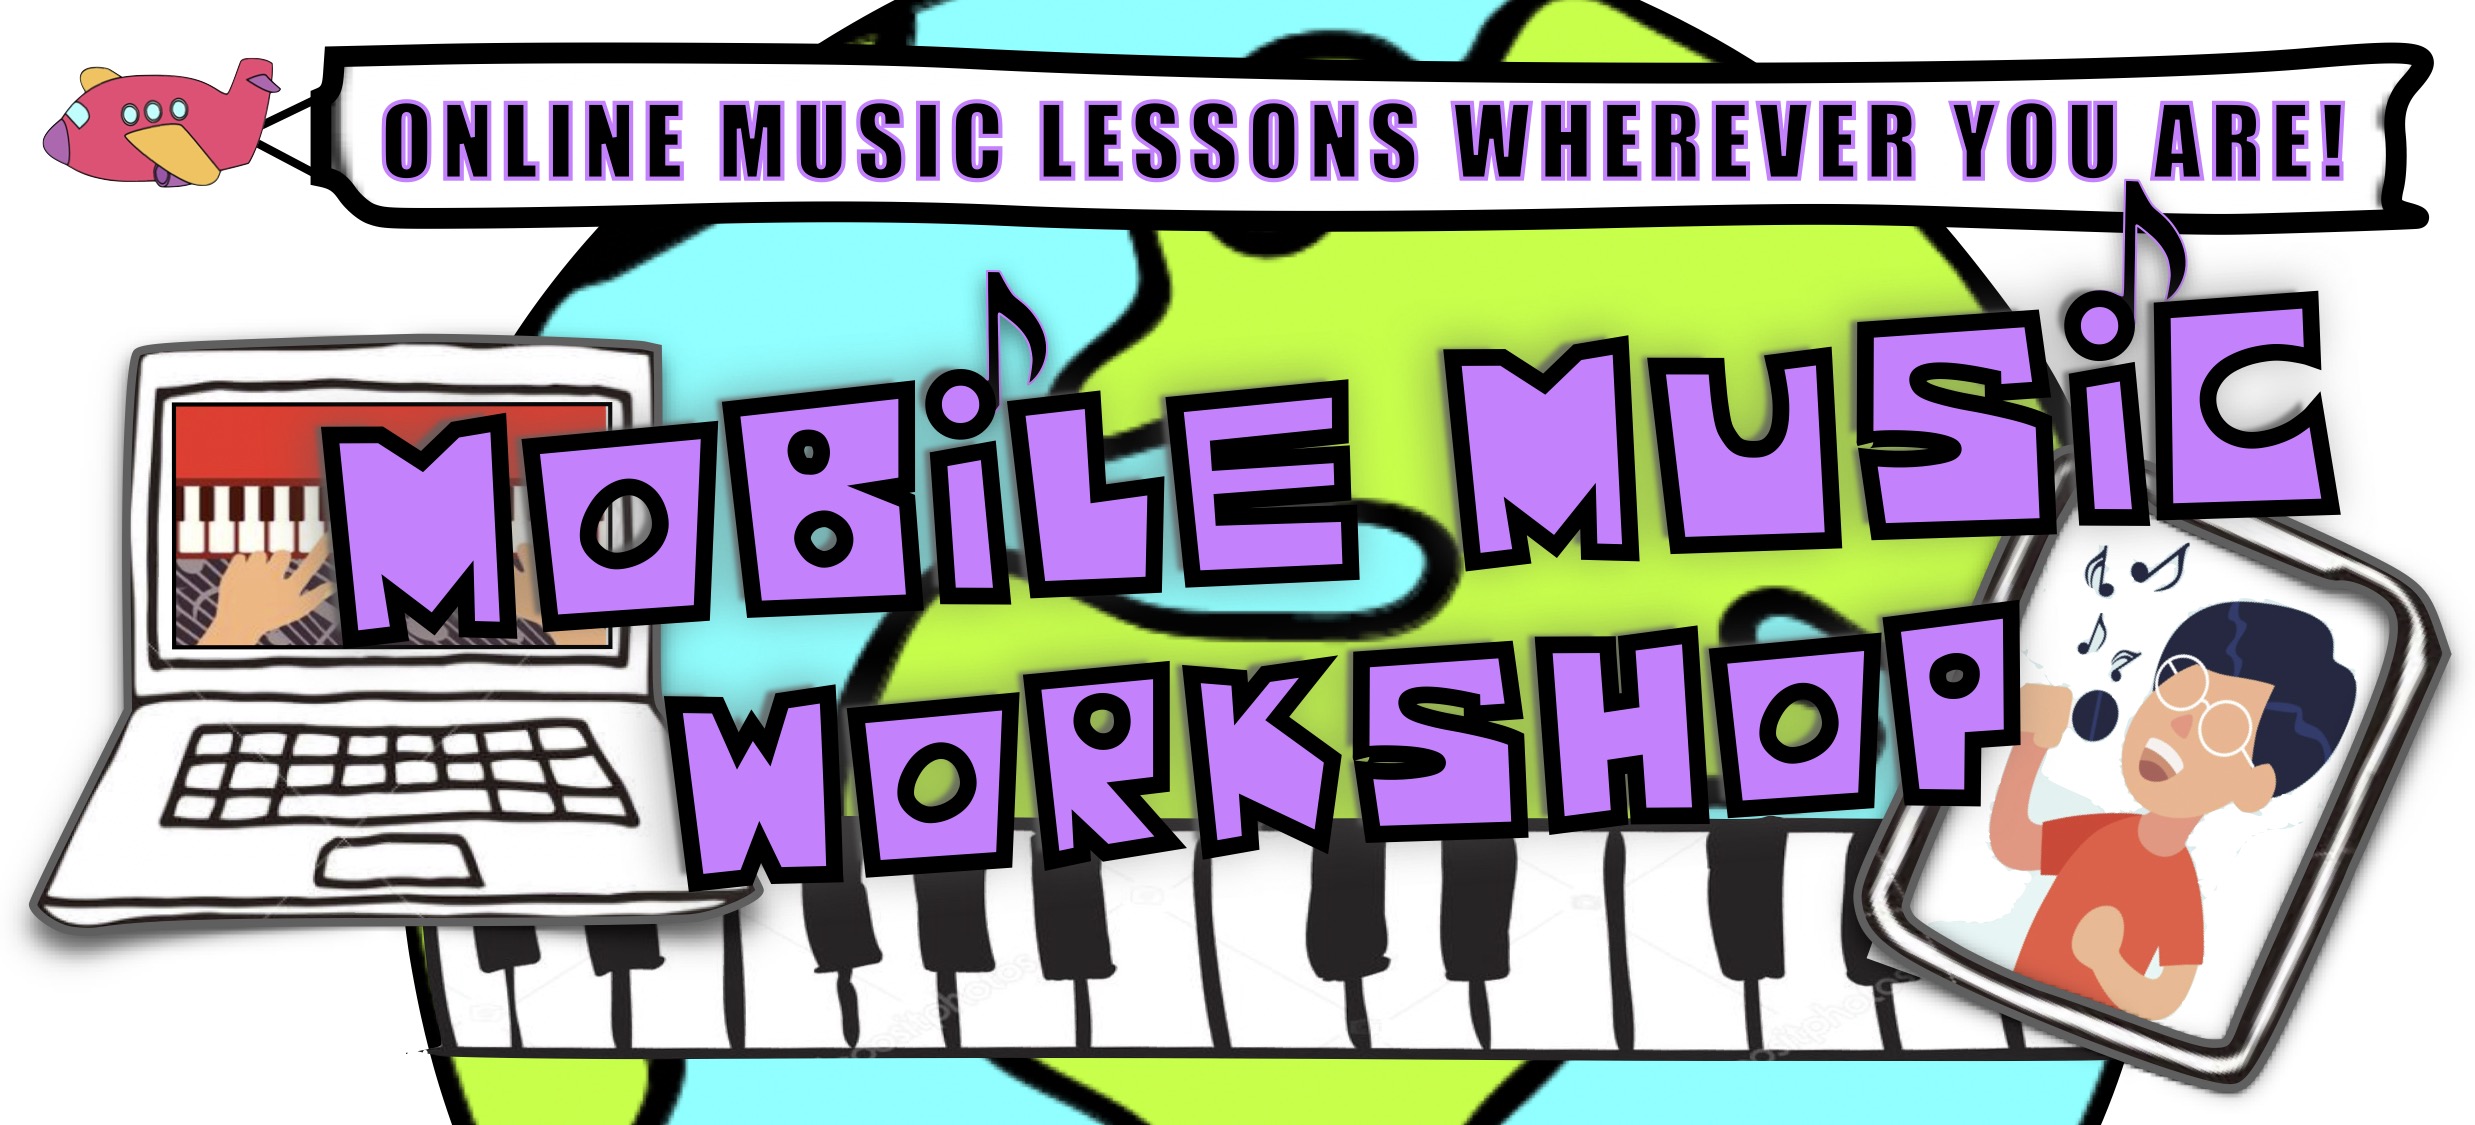 Mobile Music Workshop